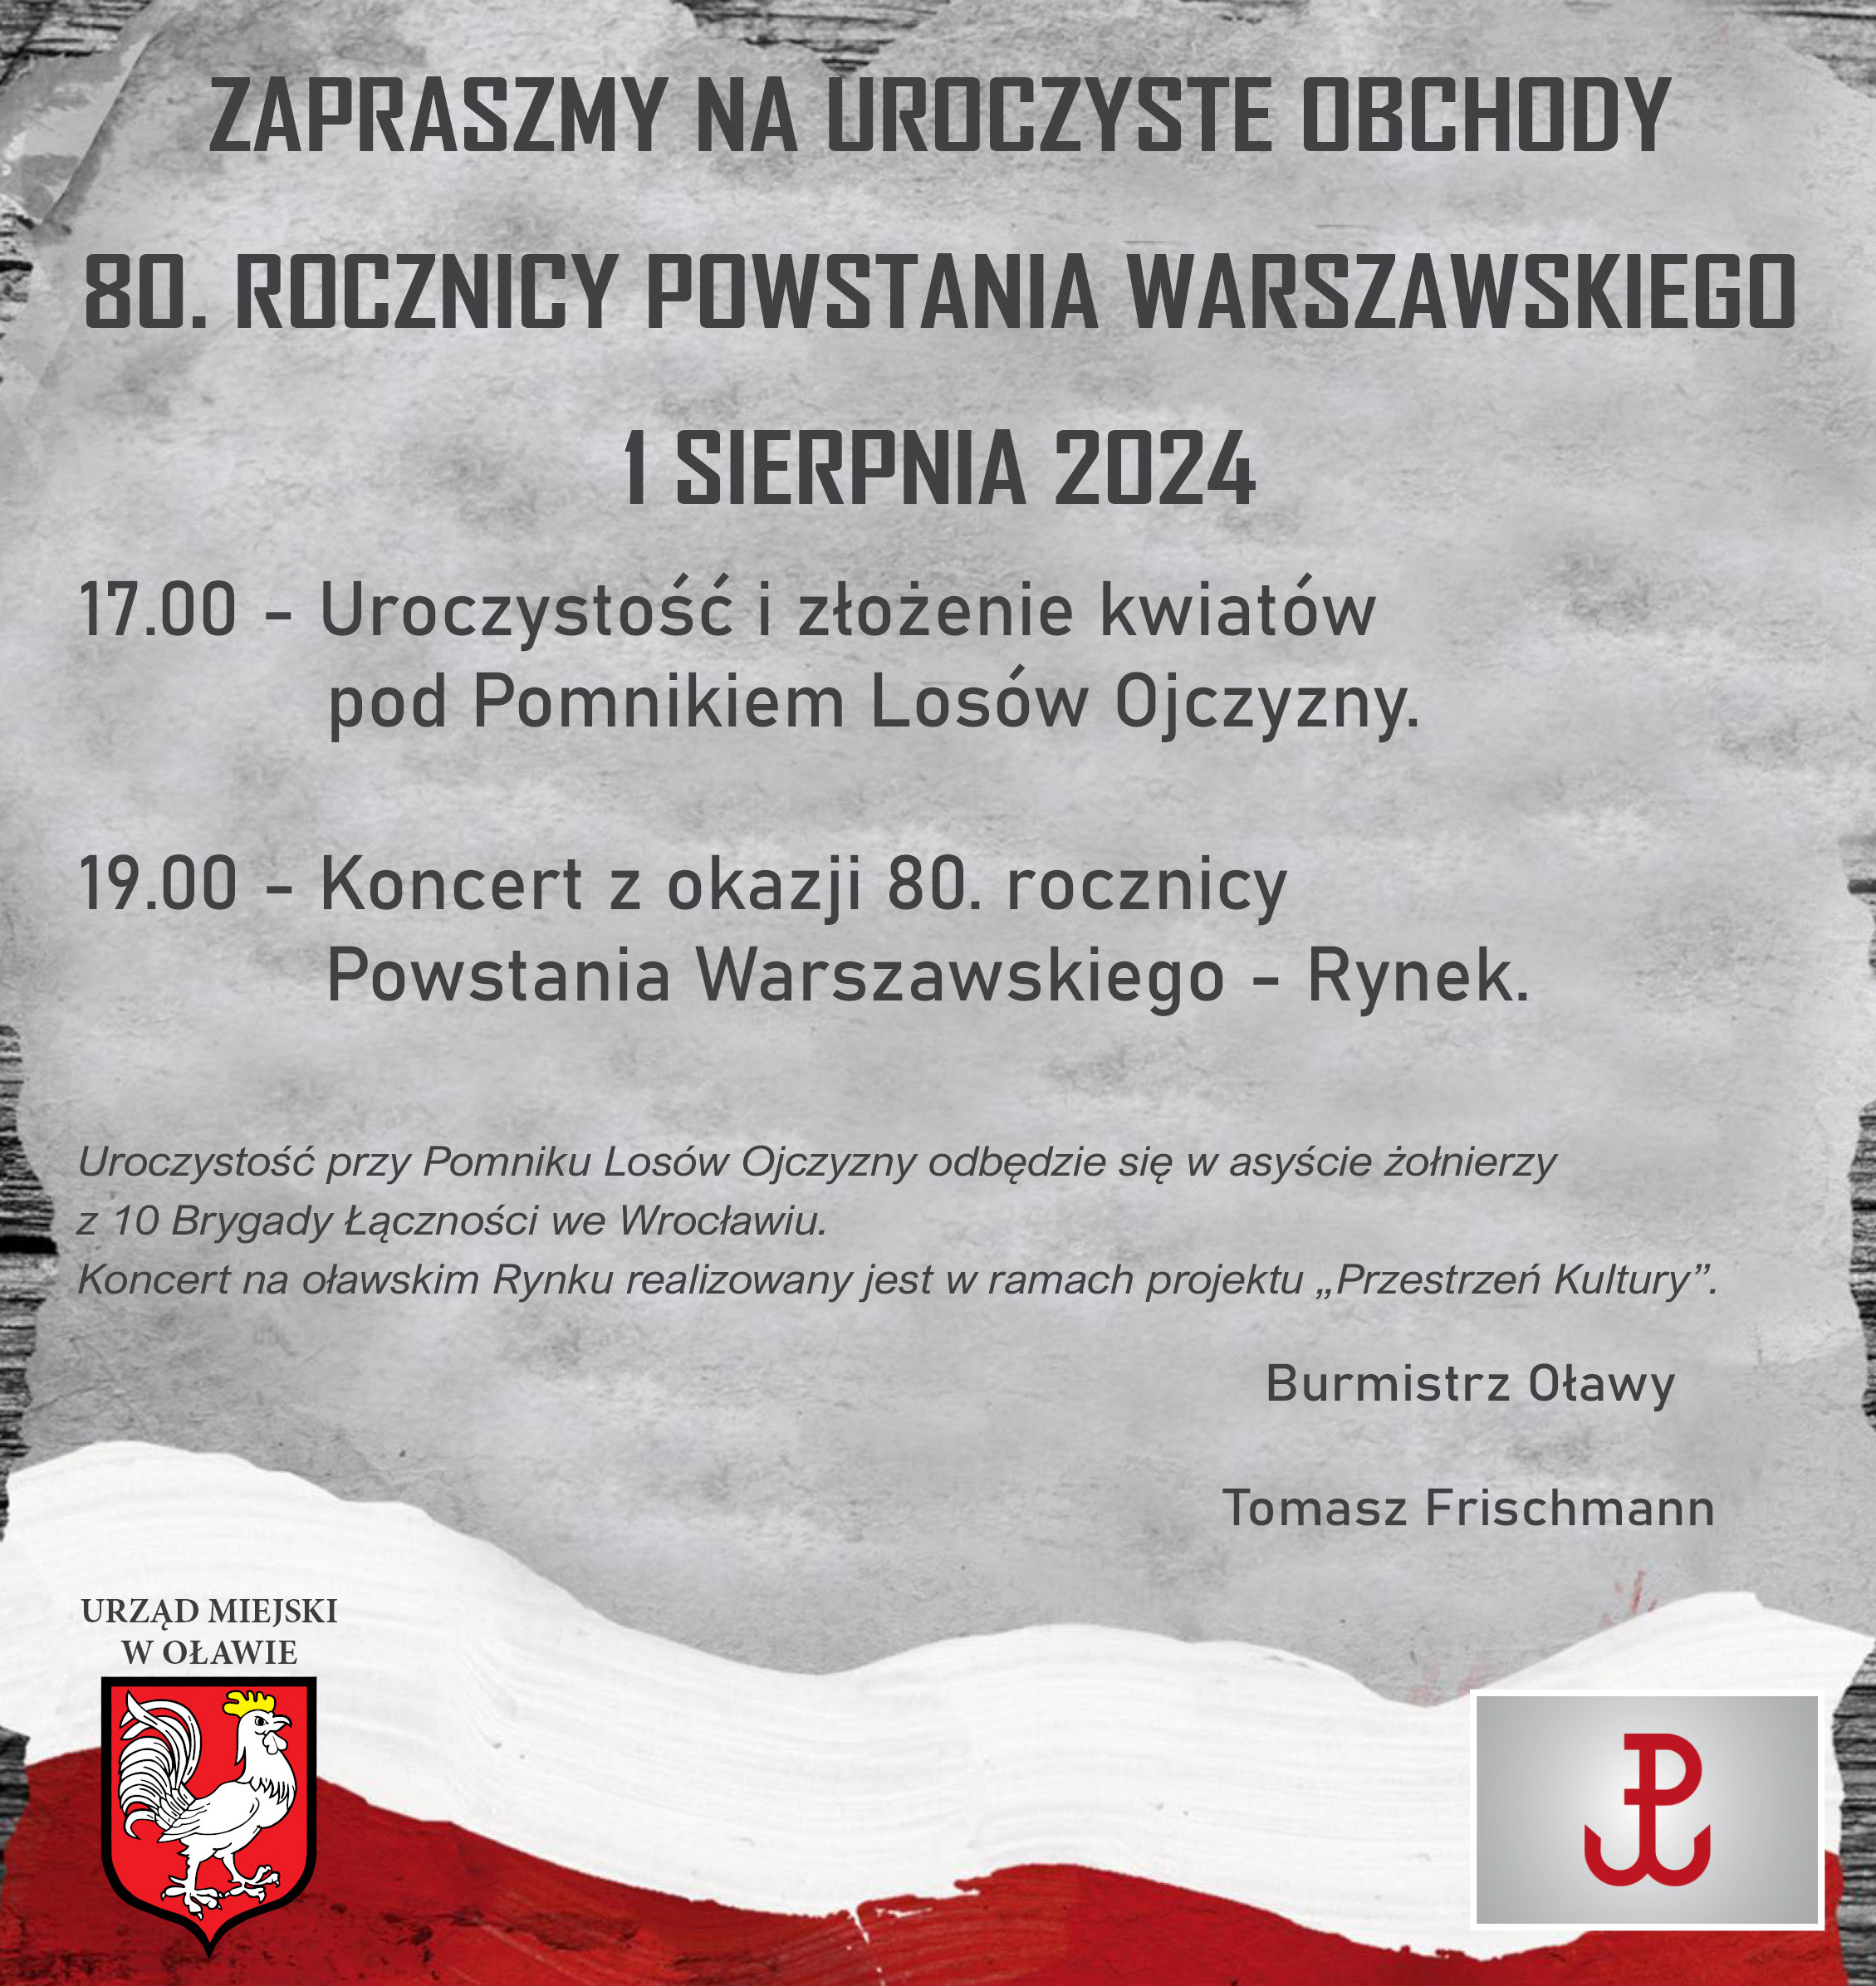 aktualność: Uroczyste obchody 80. rocznicy Powstania Warszawskiego